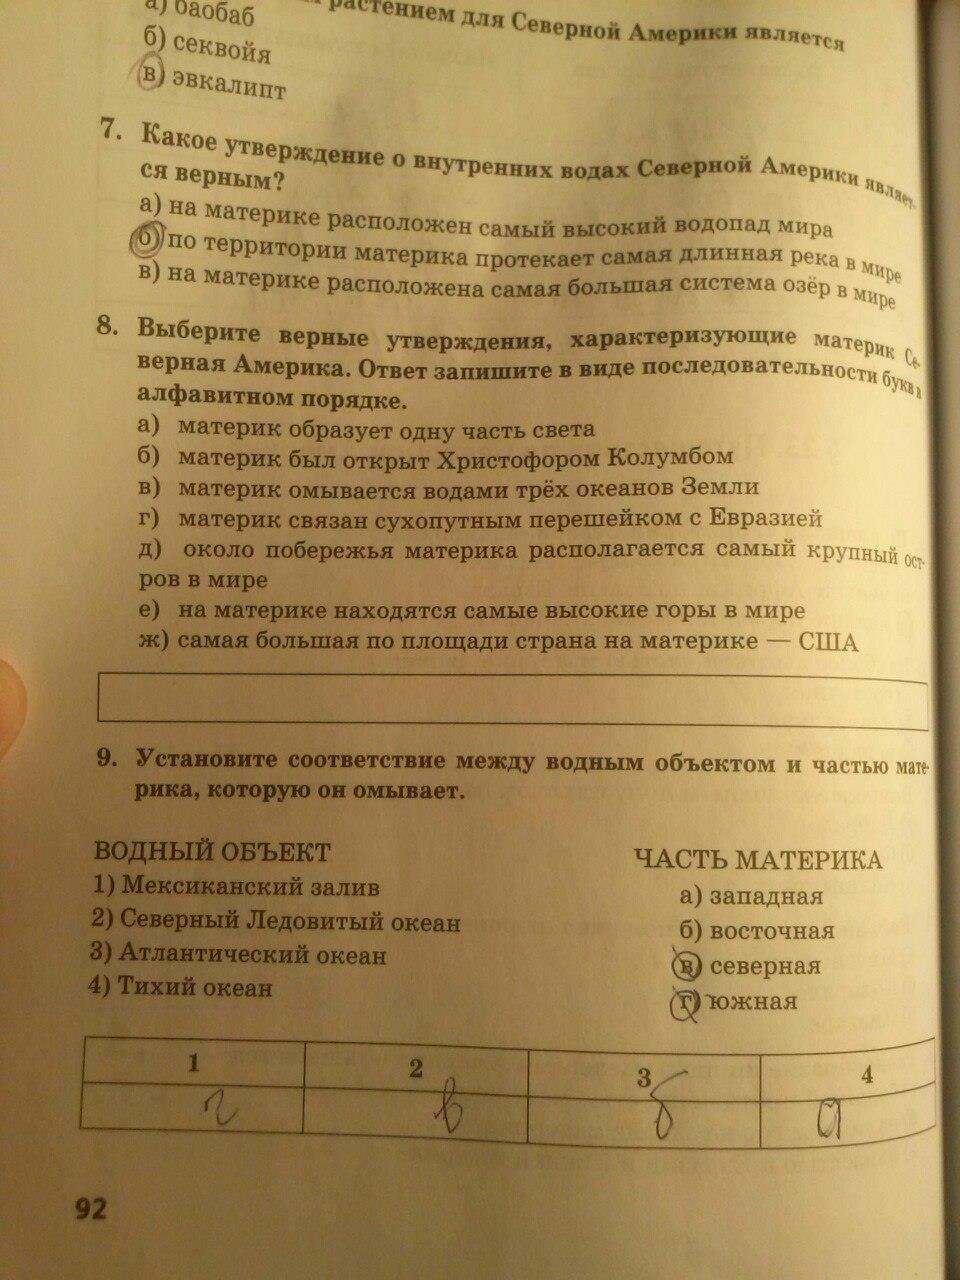 гдз 5 класс тетрадь-практикум страница 92 география Молодцов